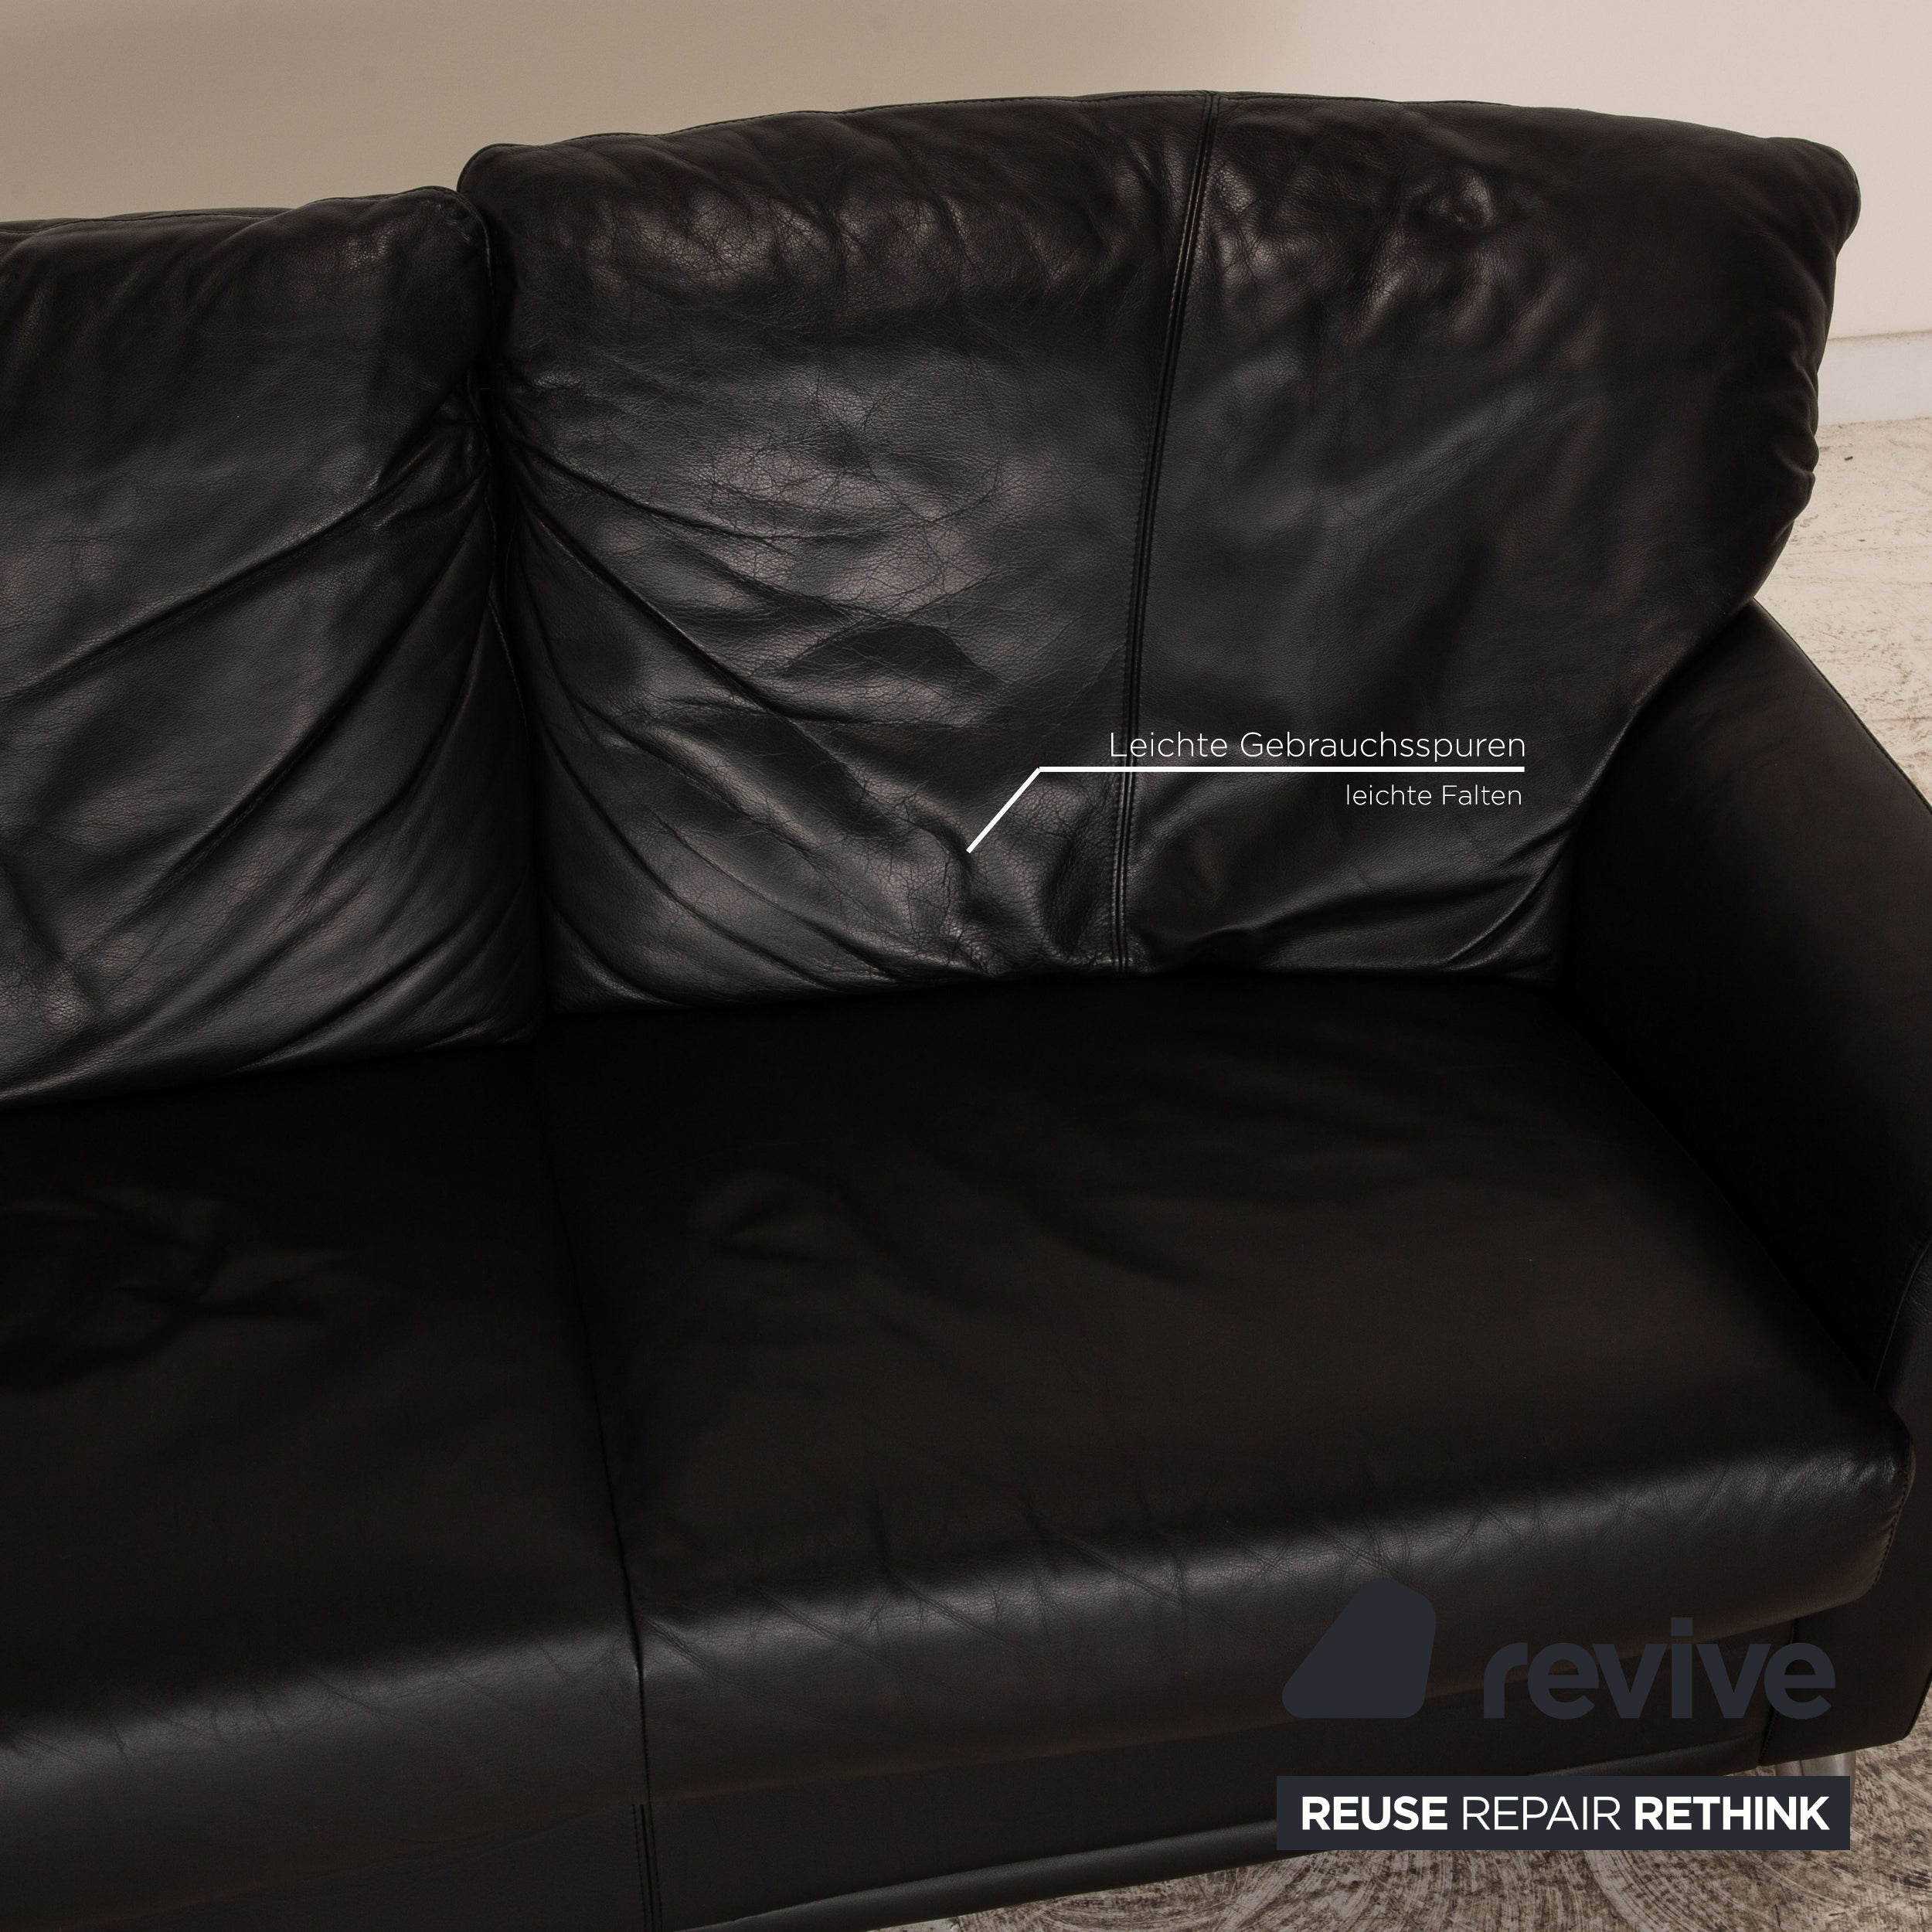 Leolux Leder Zweisitzer Schwarz Sofa Couch